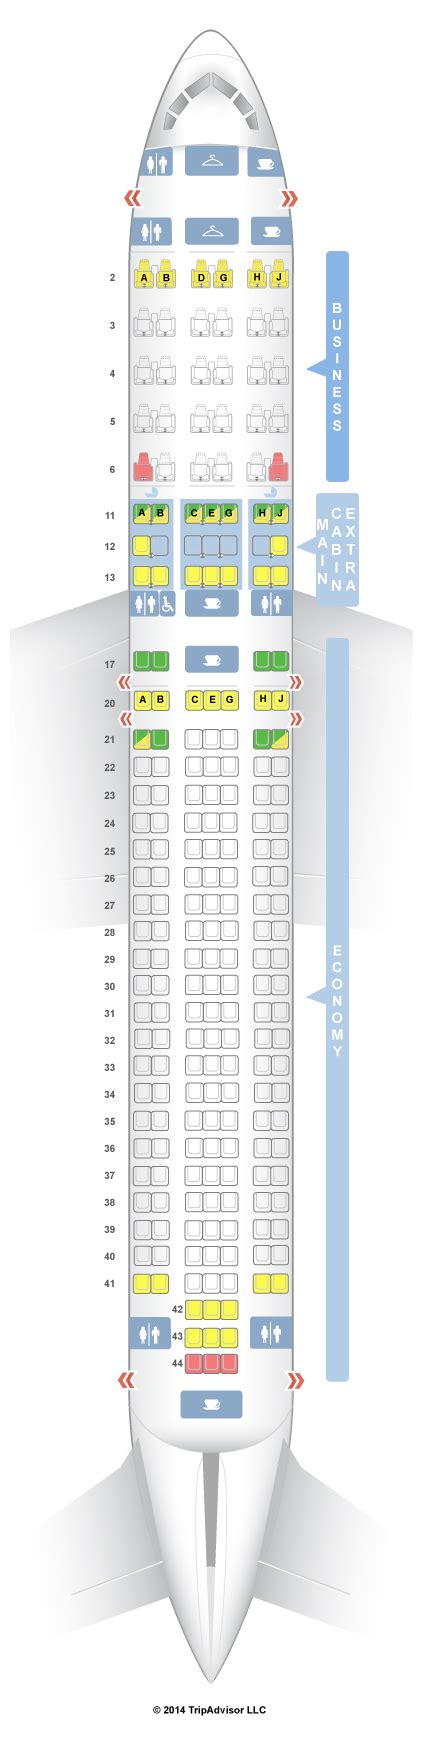 Seatguru Seat Map American Airlines Boeing 767 300 763 V1 American